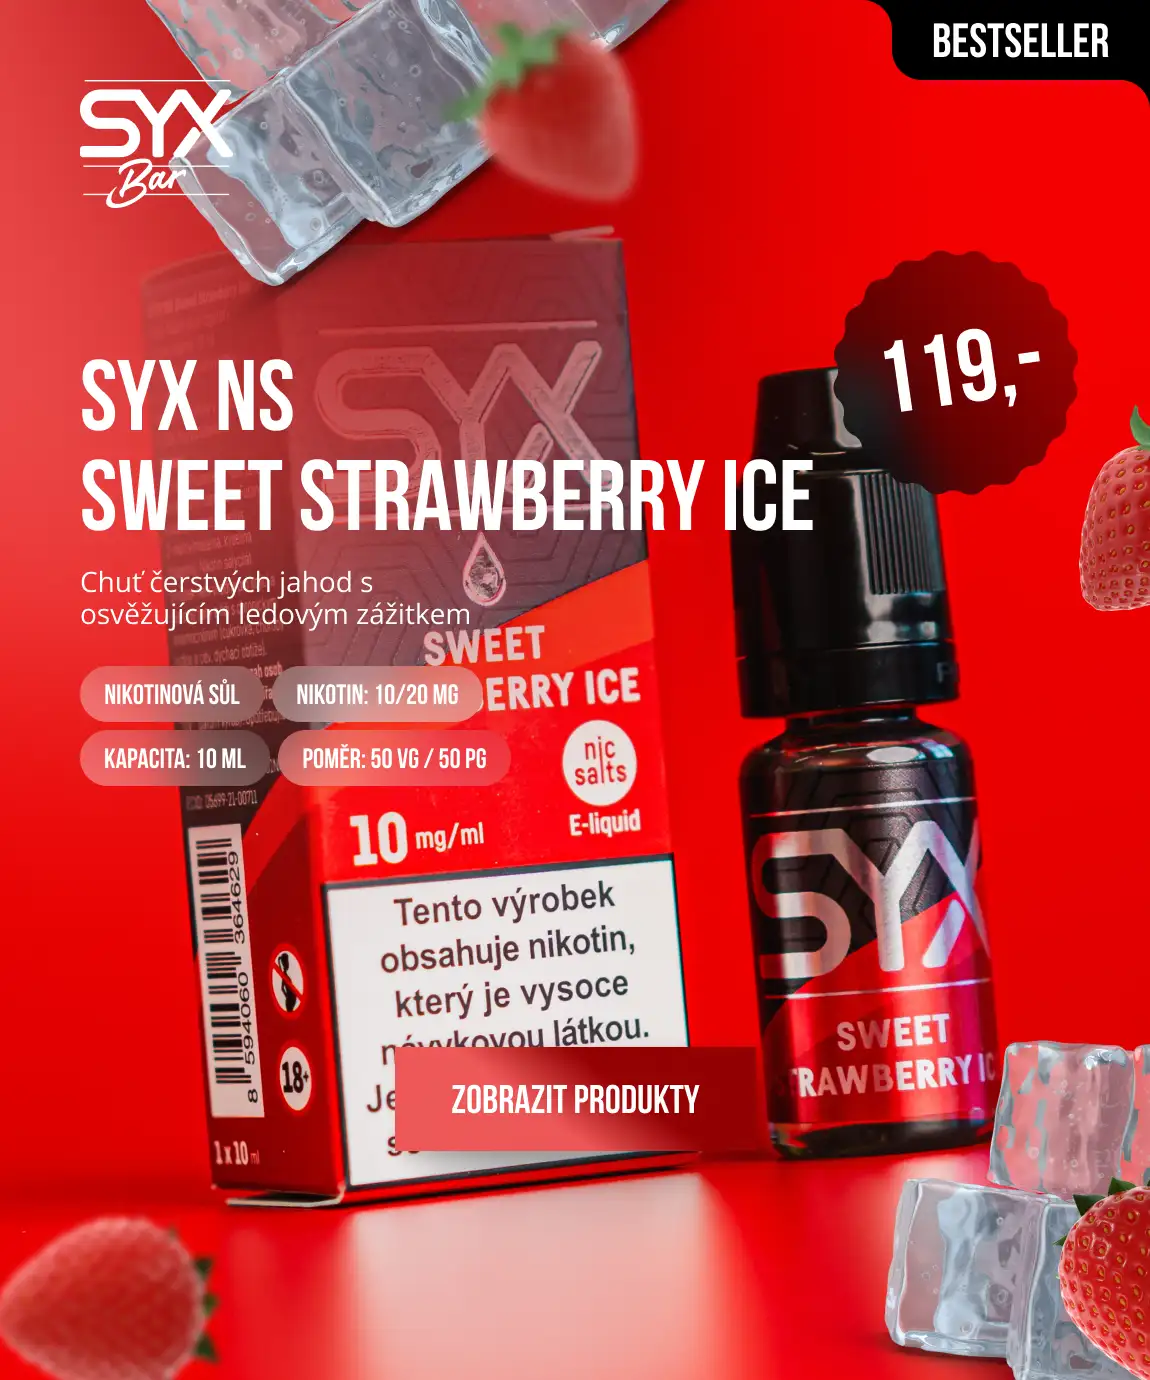 SYX NS SWEET STRAWBERRY ICE: Chuť čerstvých jahod s ledovým zážitkem